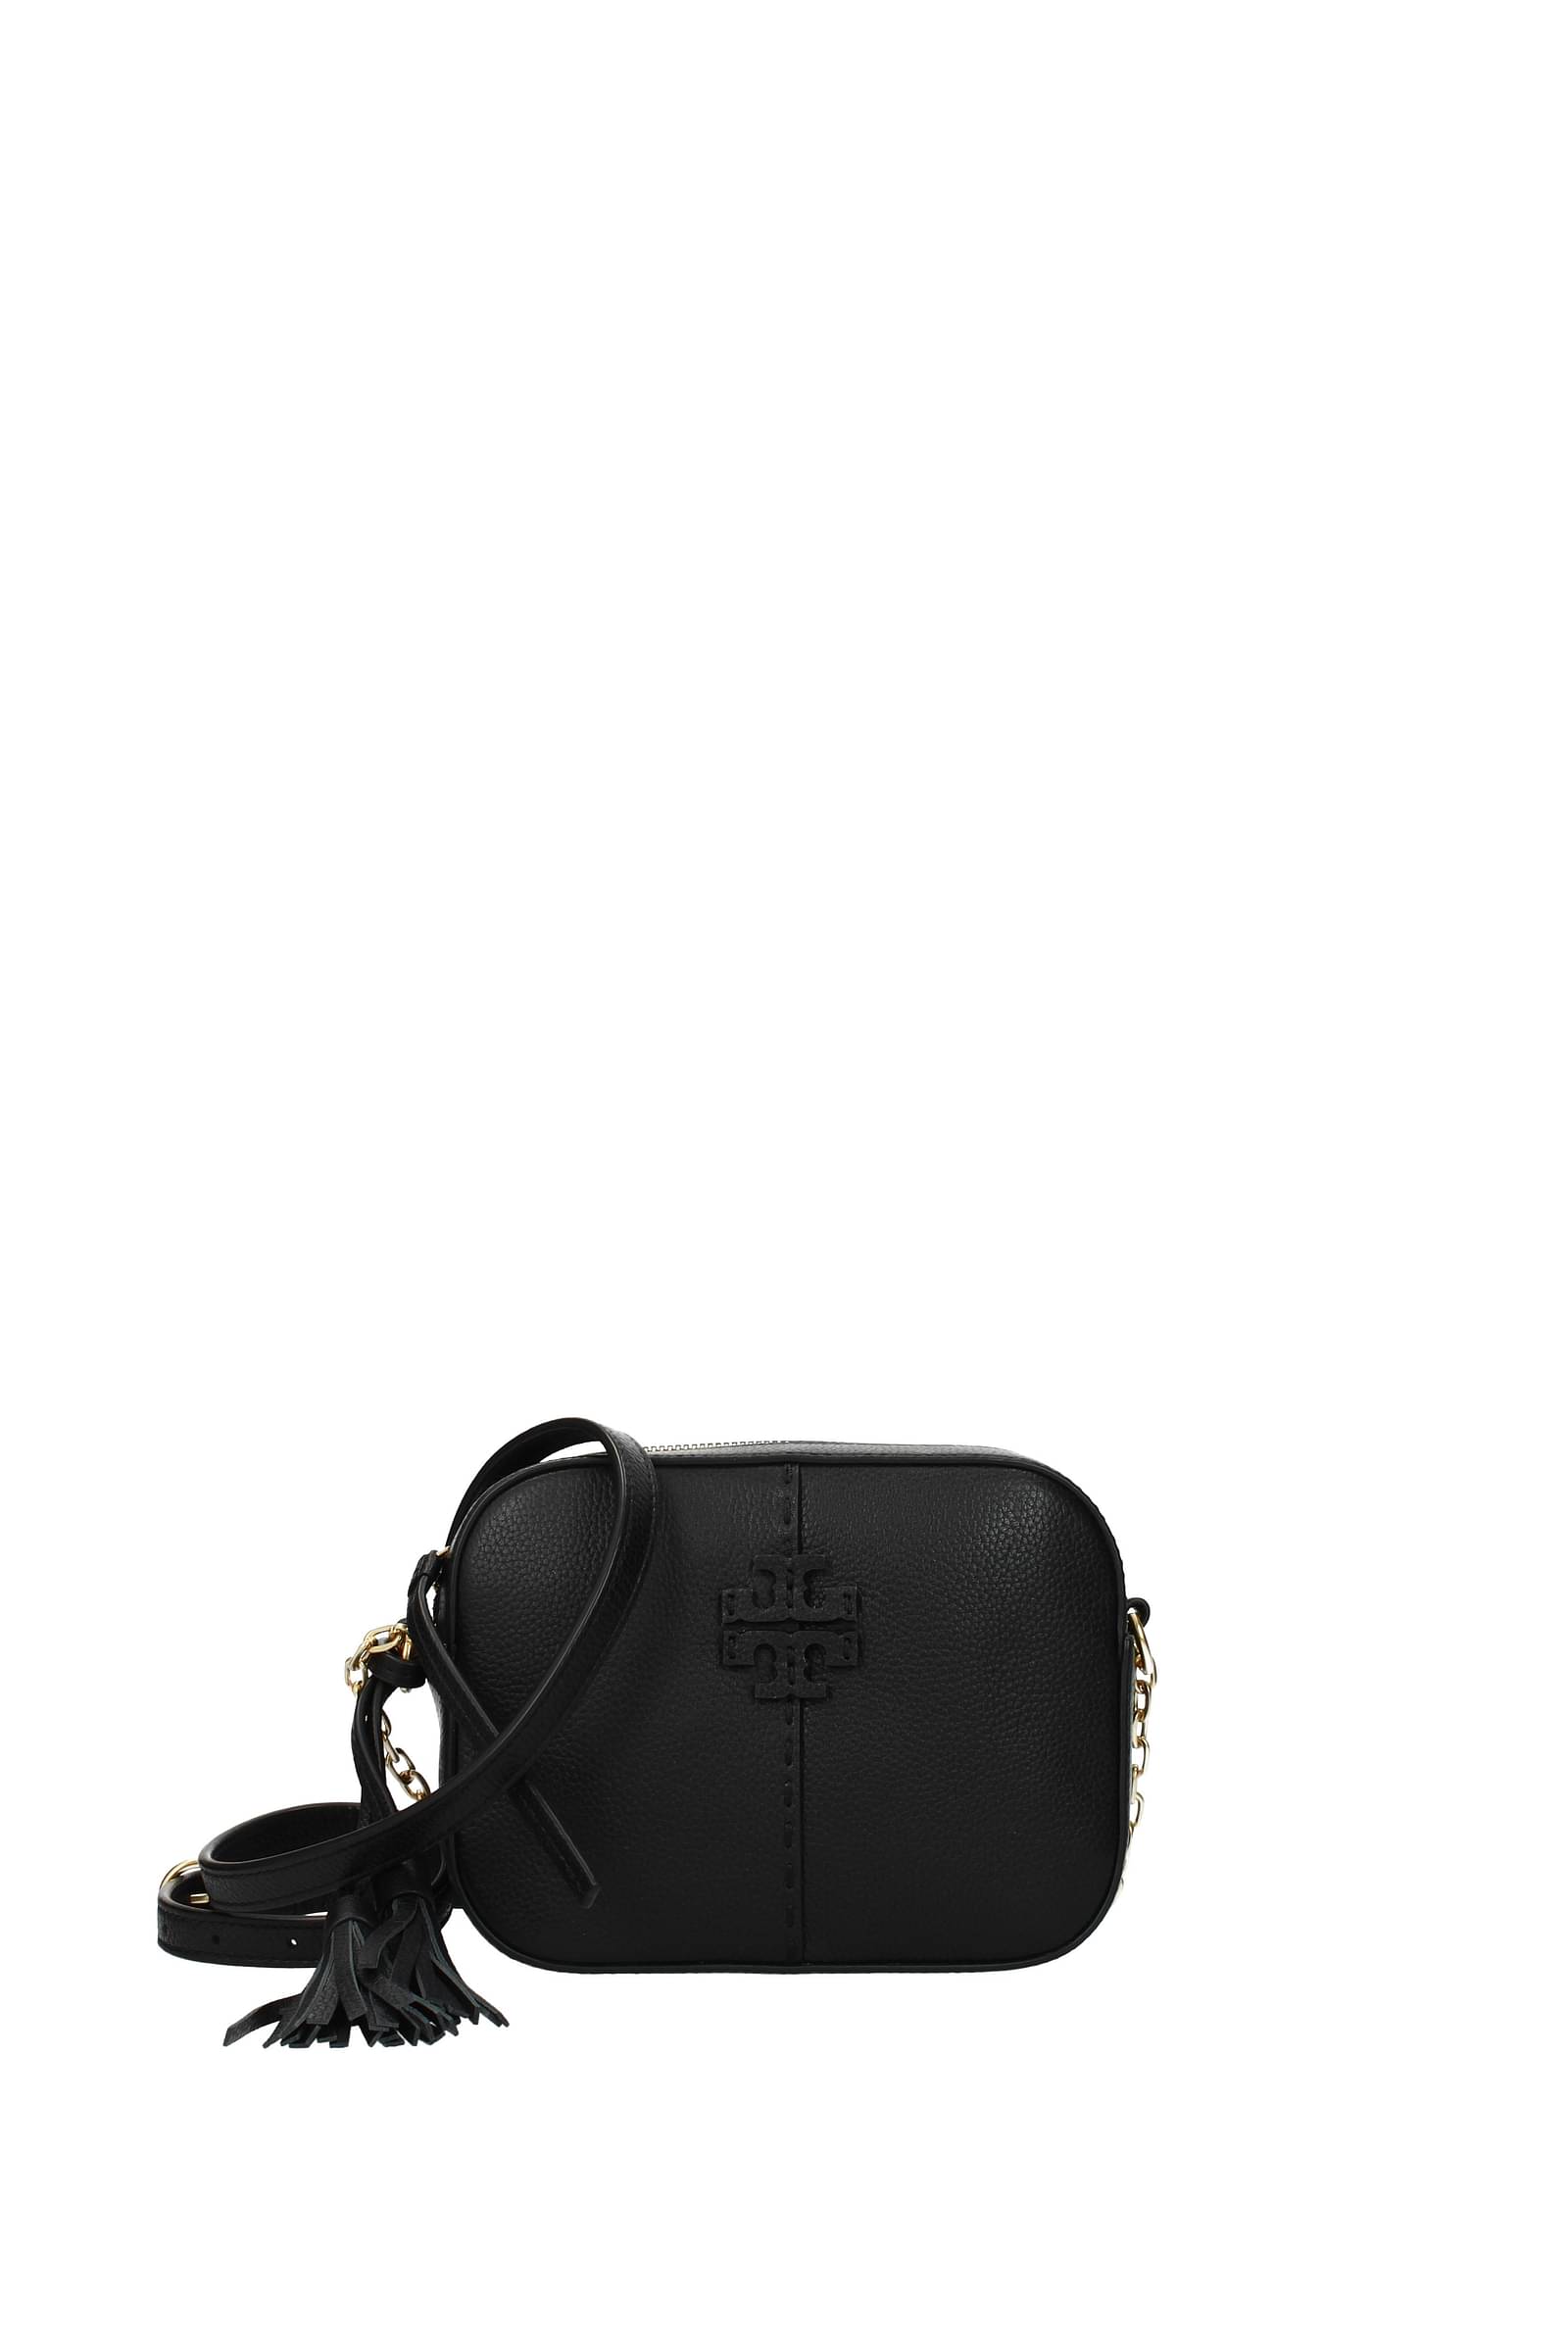 Tory Burch Miller Women's Pebbled Leather Adjustable Strap Shoulder Bag -  Walmart.com